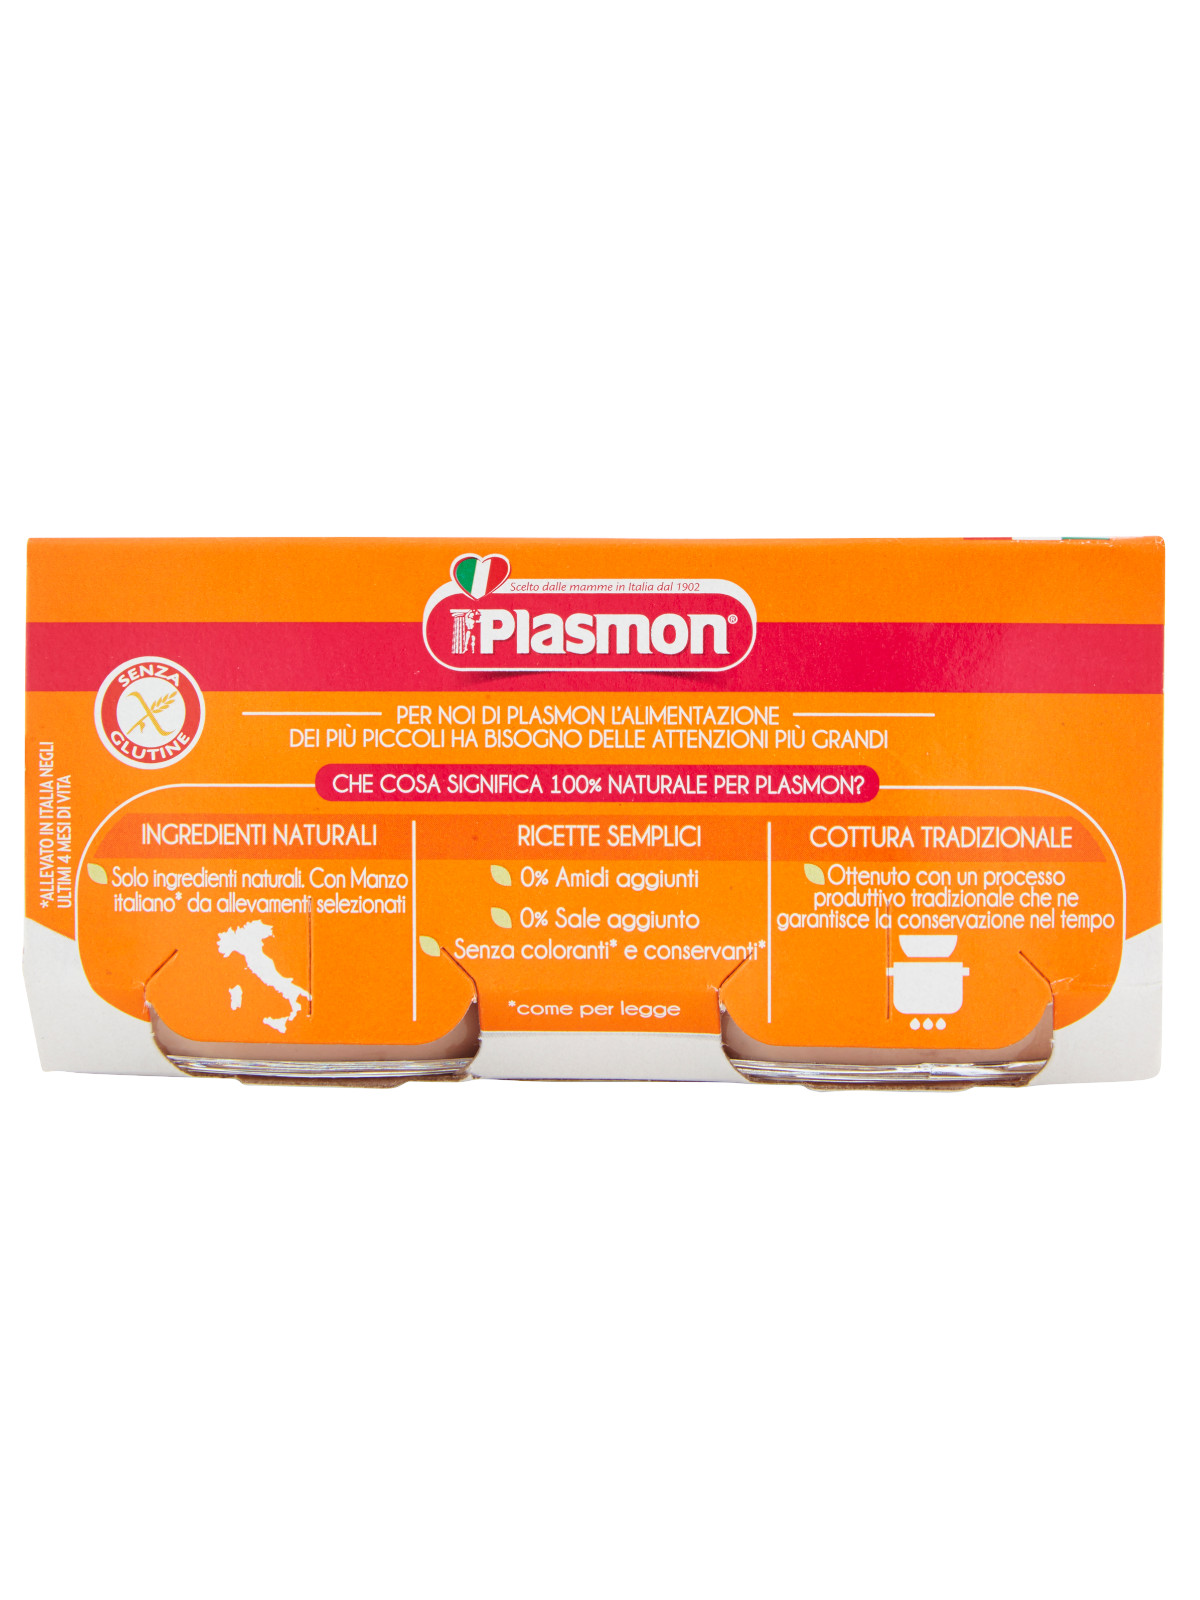 Plasmon - omo manzo - 2x80g - PLASMON